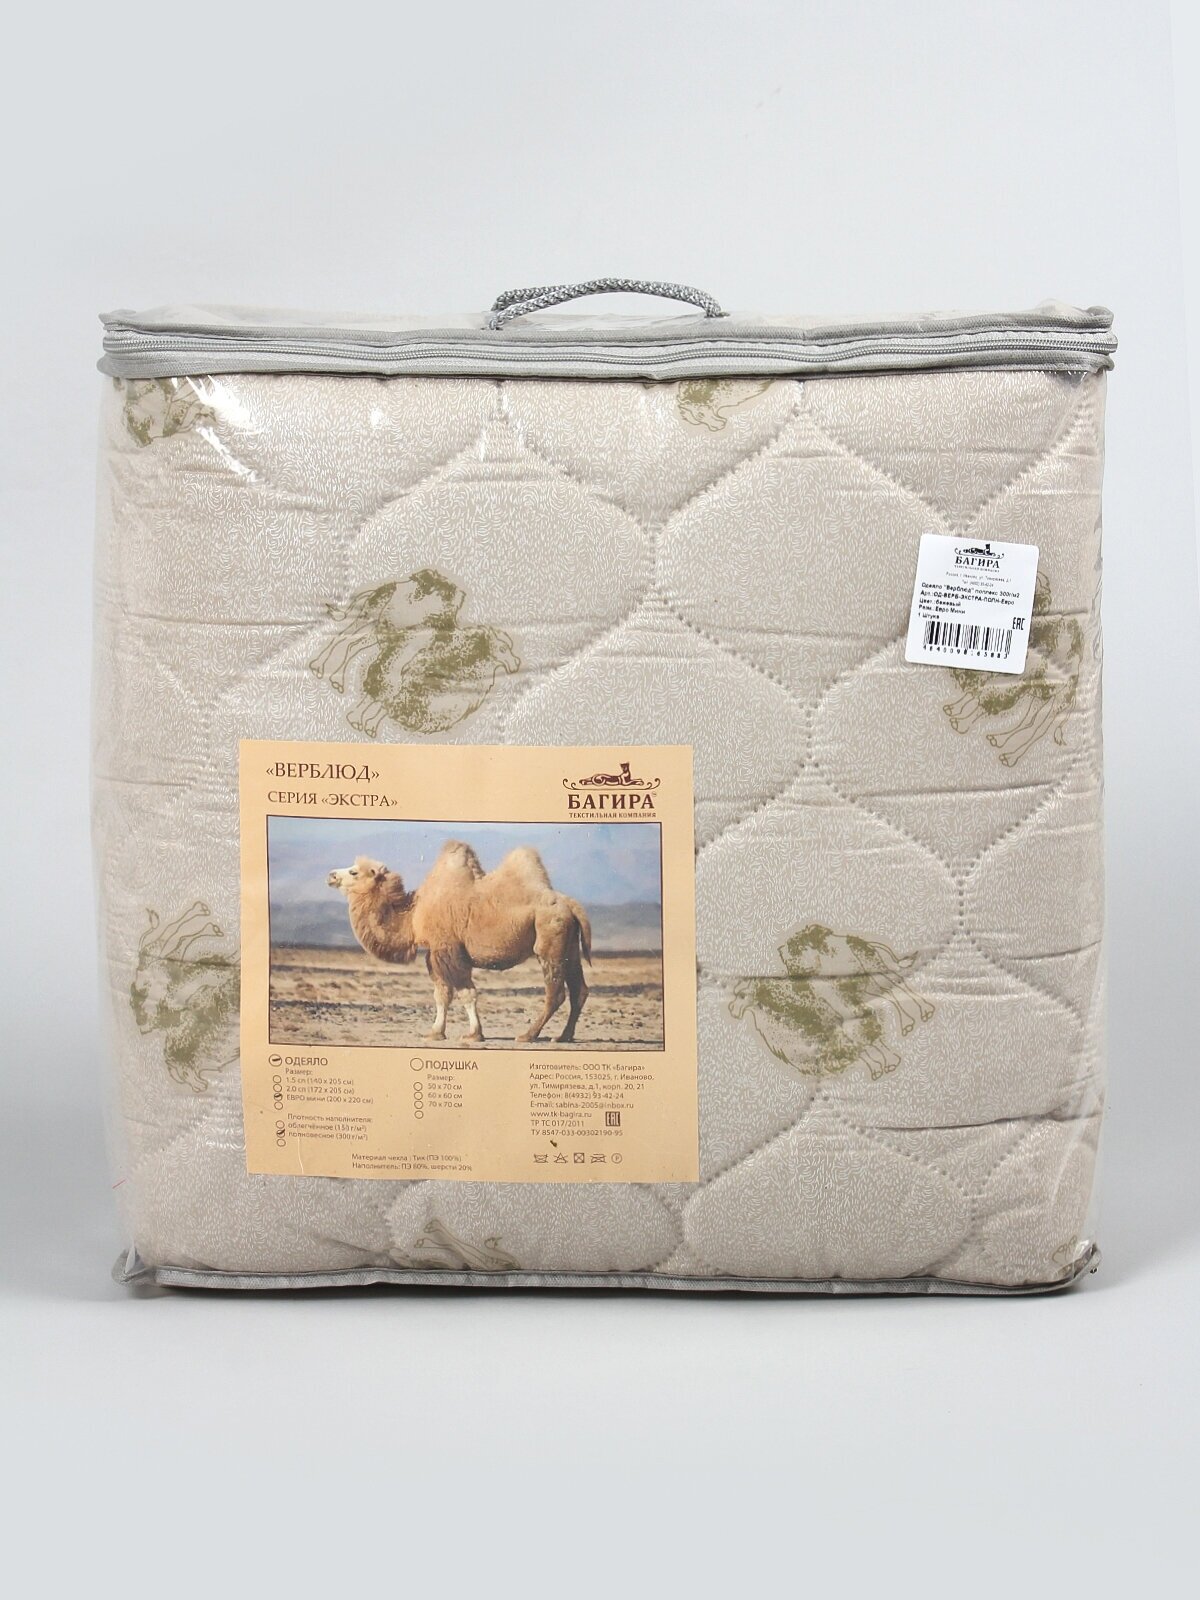 Одеяло "Верблюжья шерсть" полновесное, Евро размер, в поплексе, плотность 300 г/м2 - фотография № 11